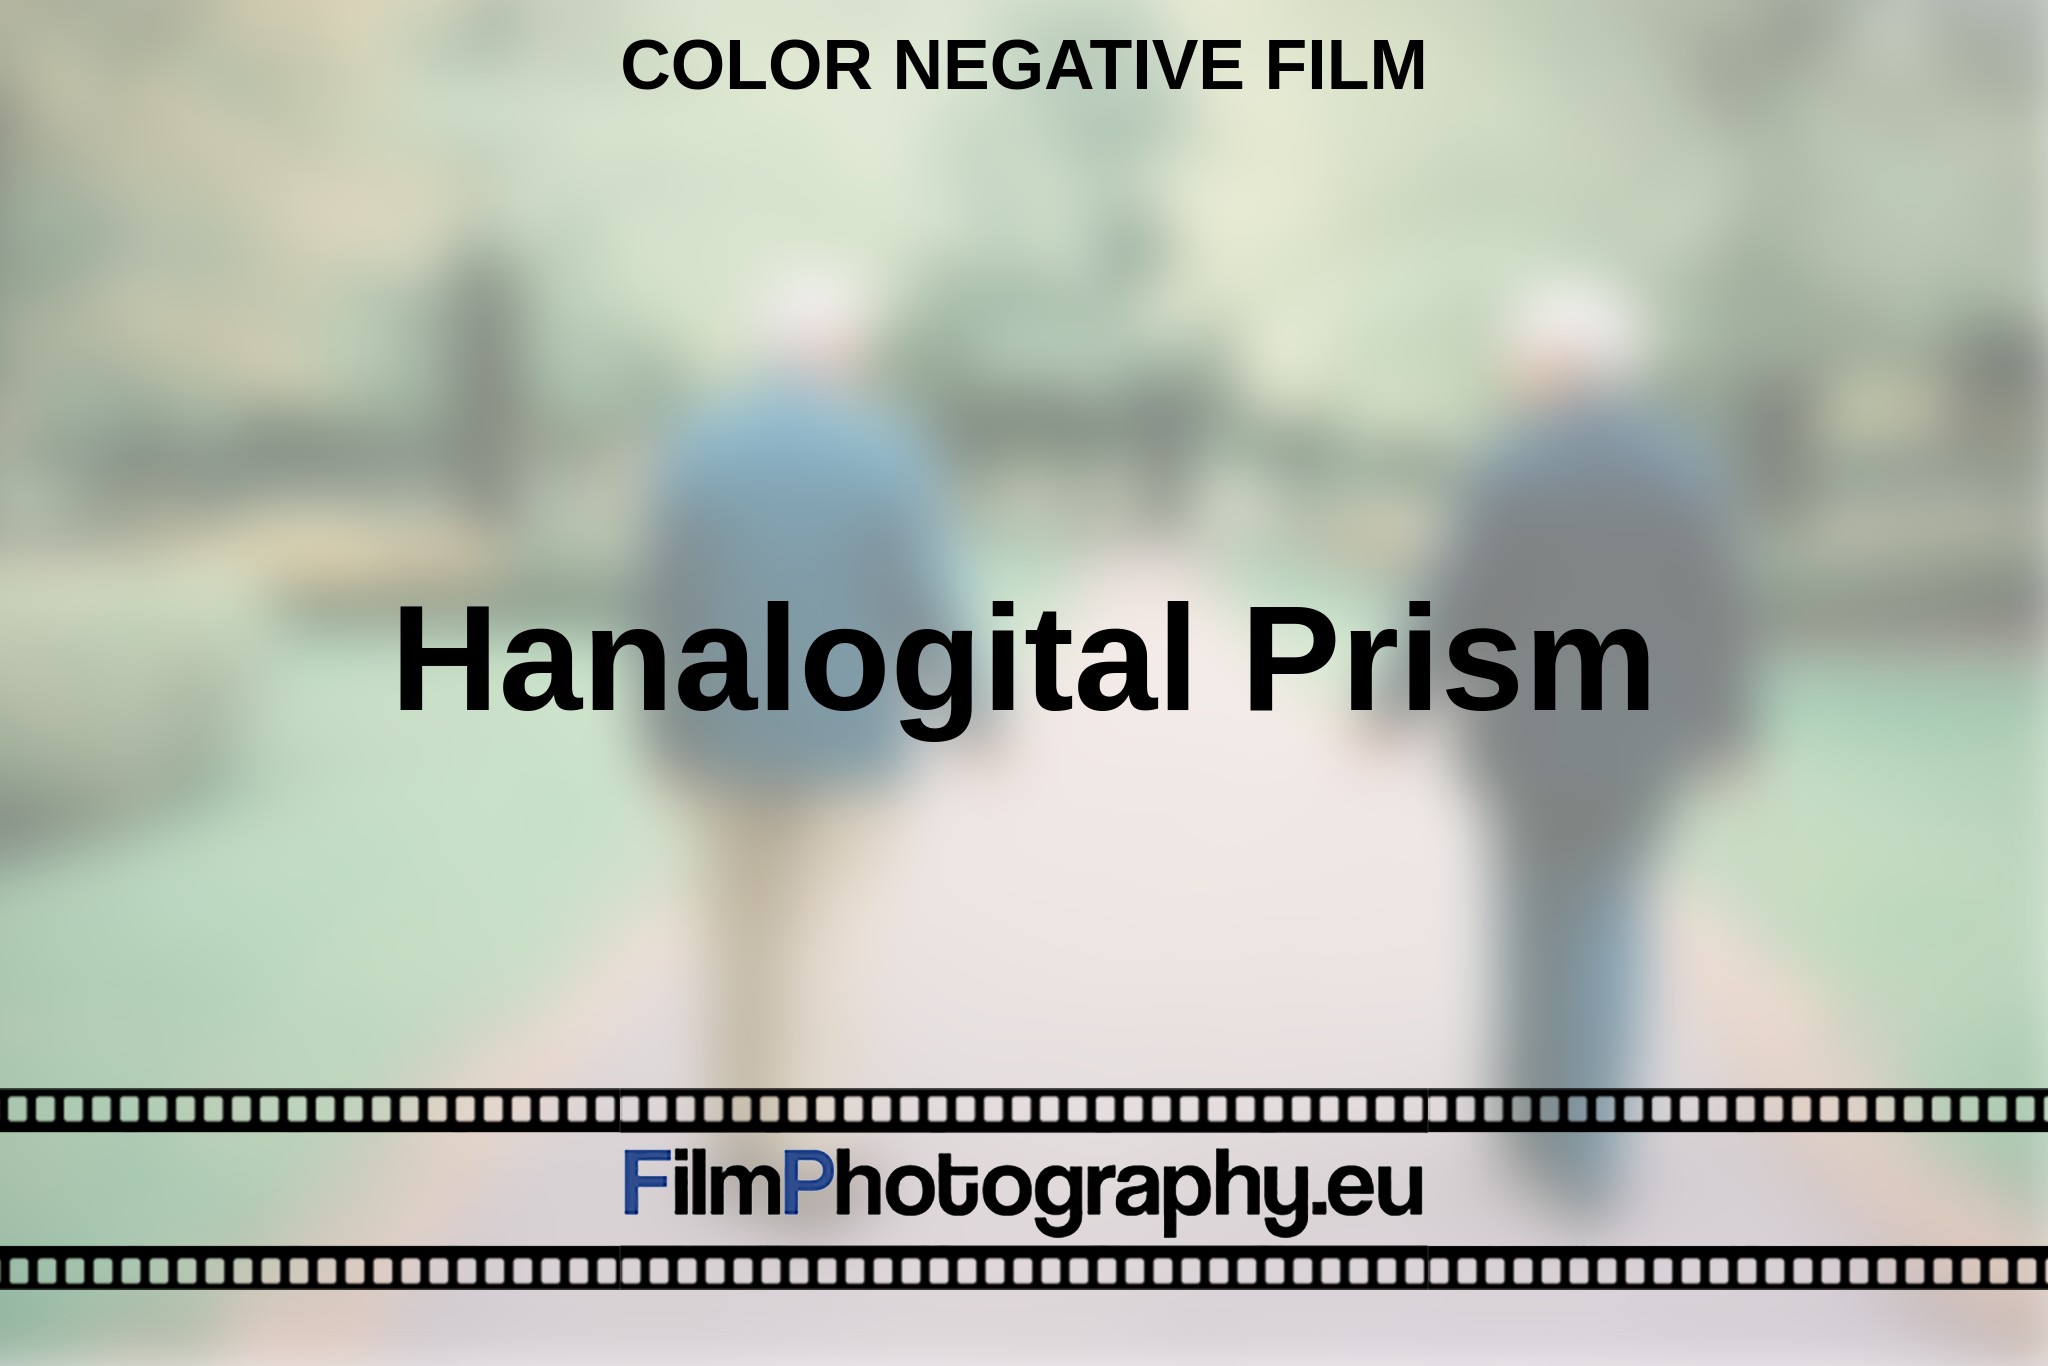 hanalogital-prism-color-negative-film-en-bnv.jpg